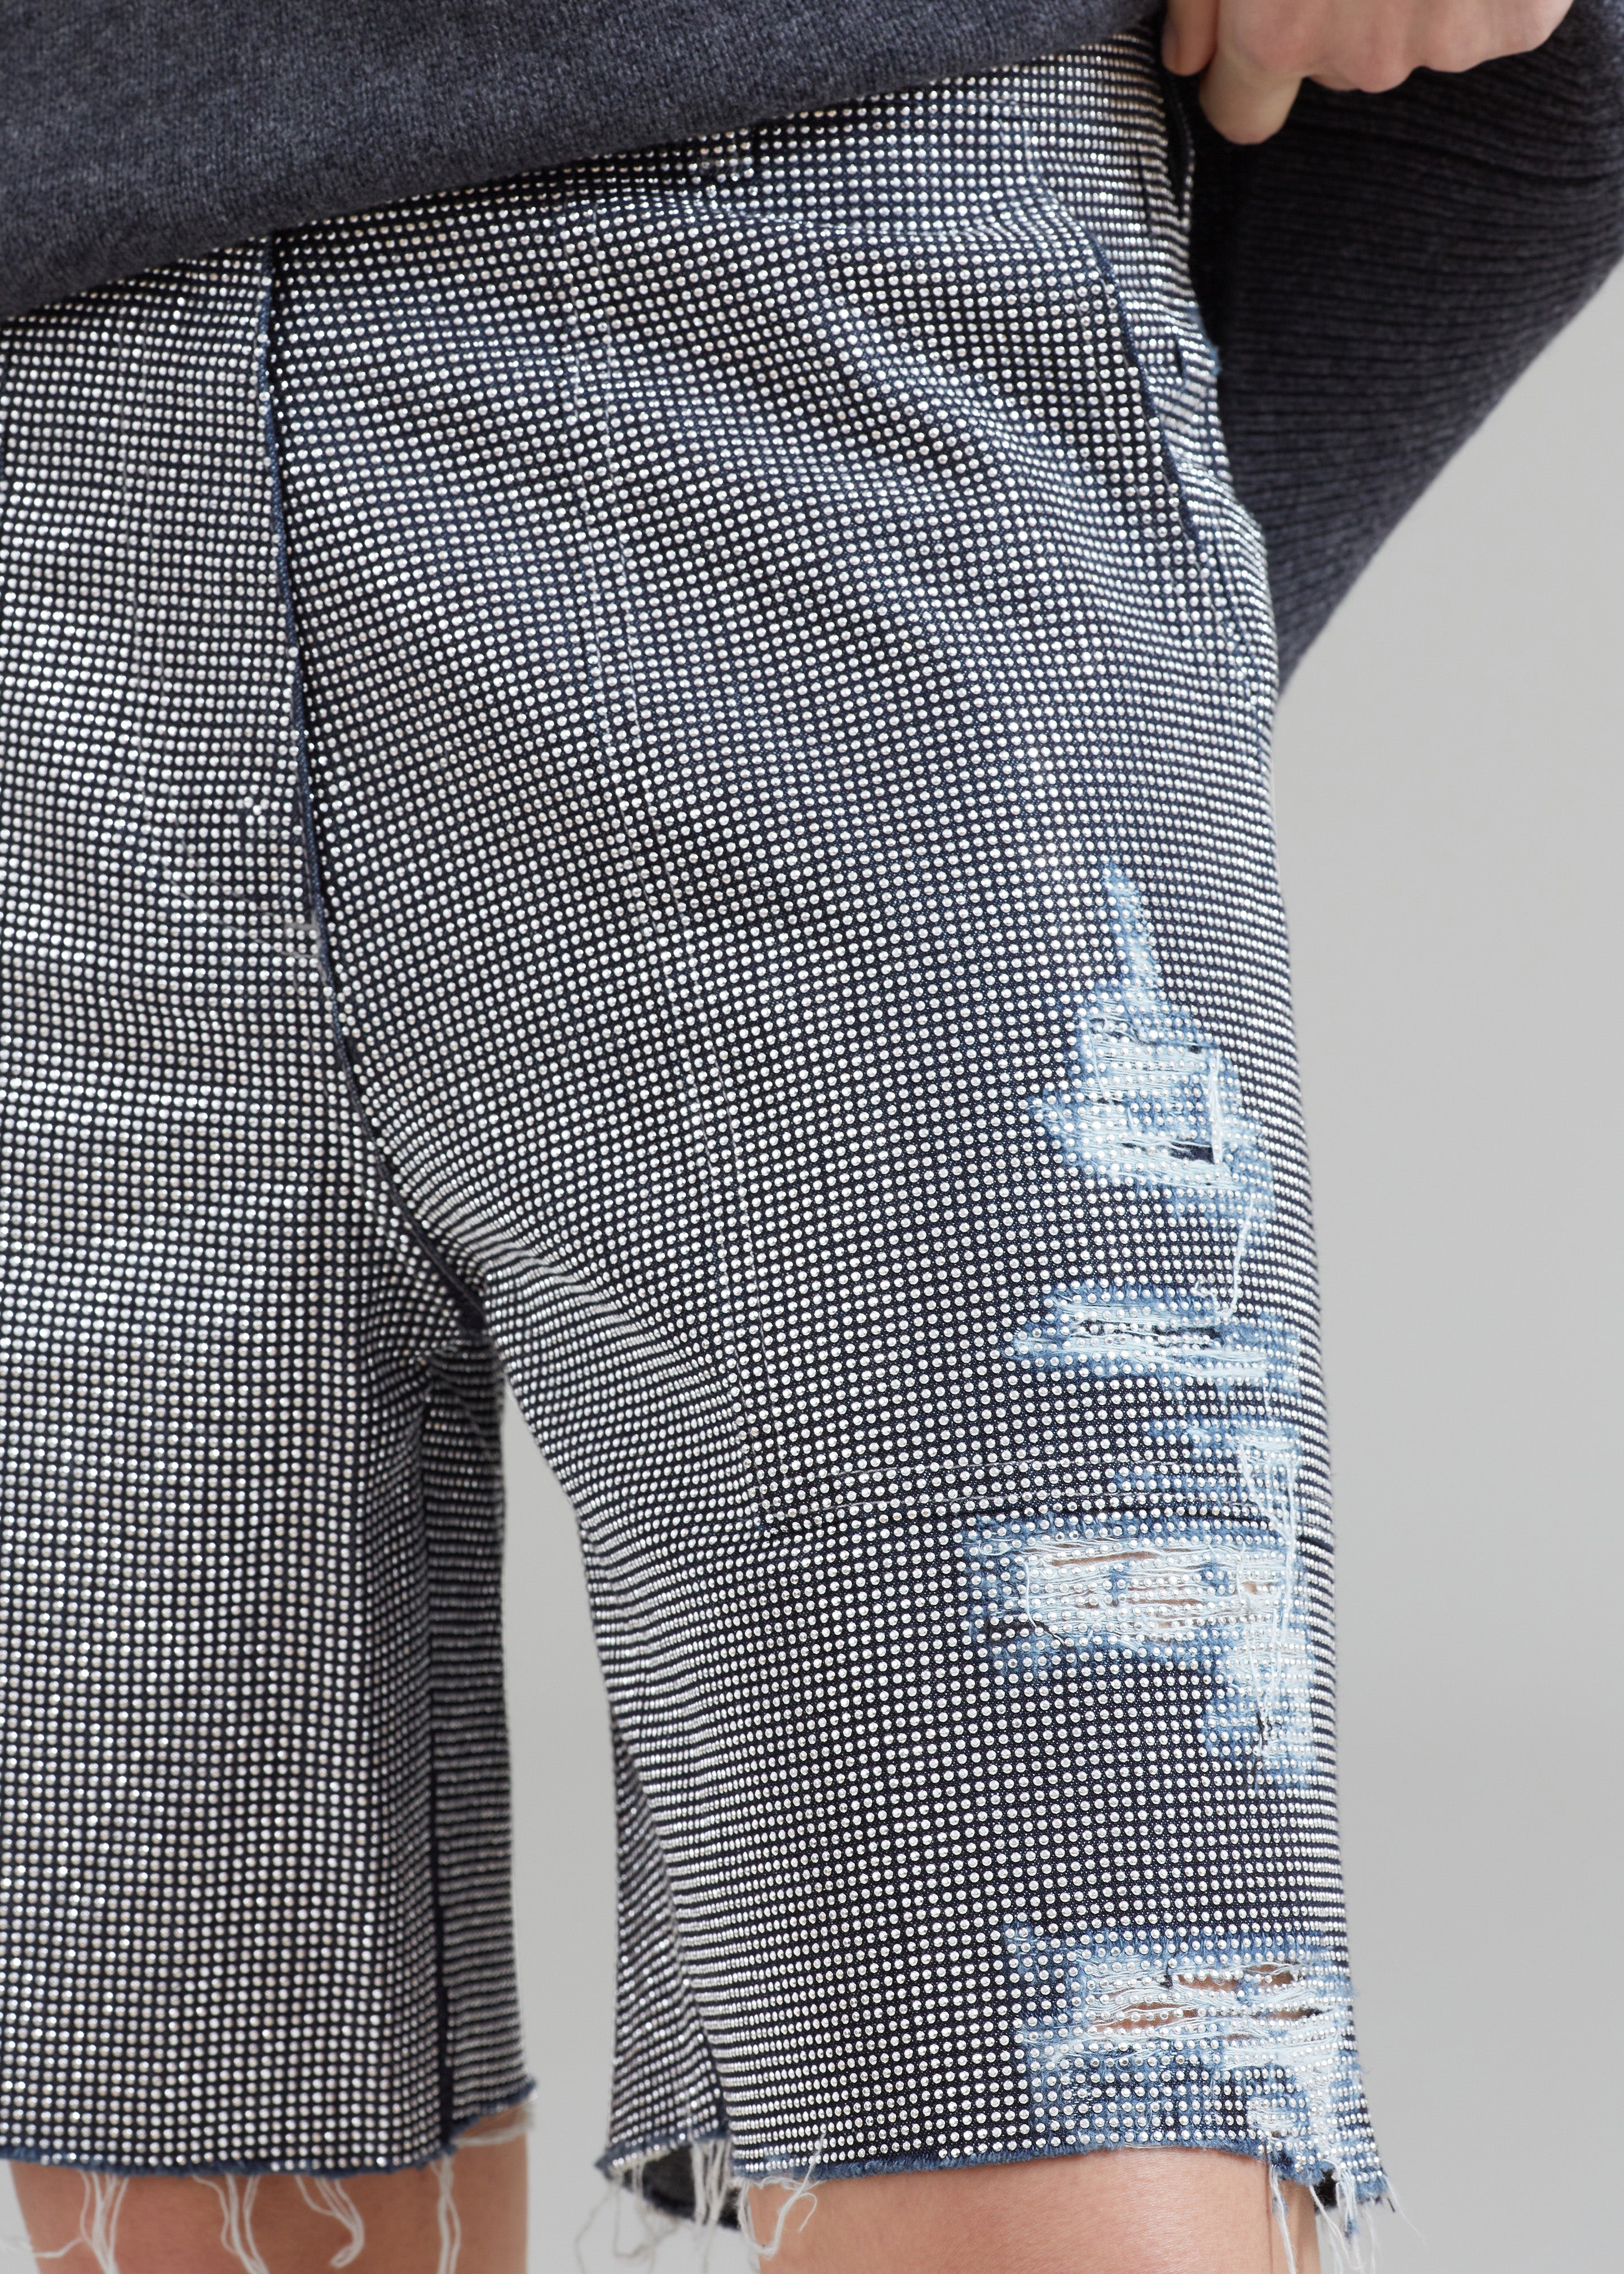 JW Anderson Studded Workwear Shorts - Indigo/Silver - 4